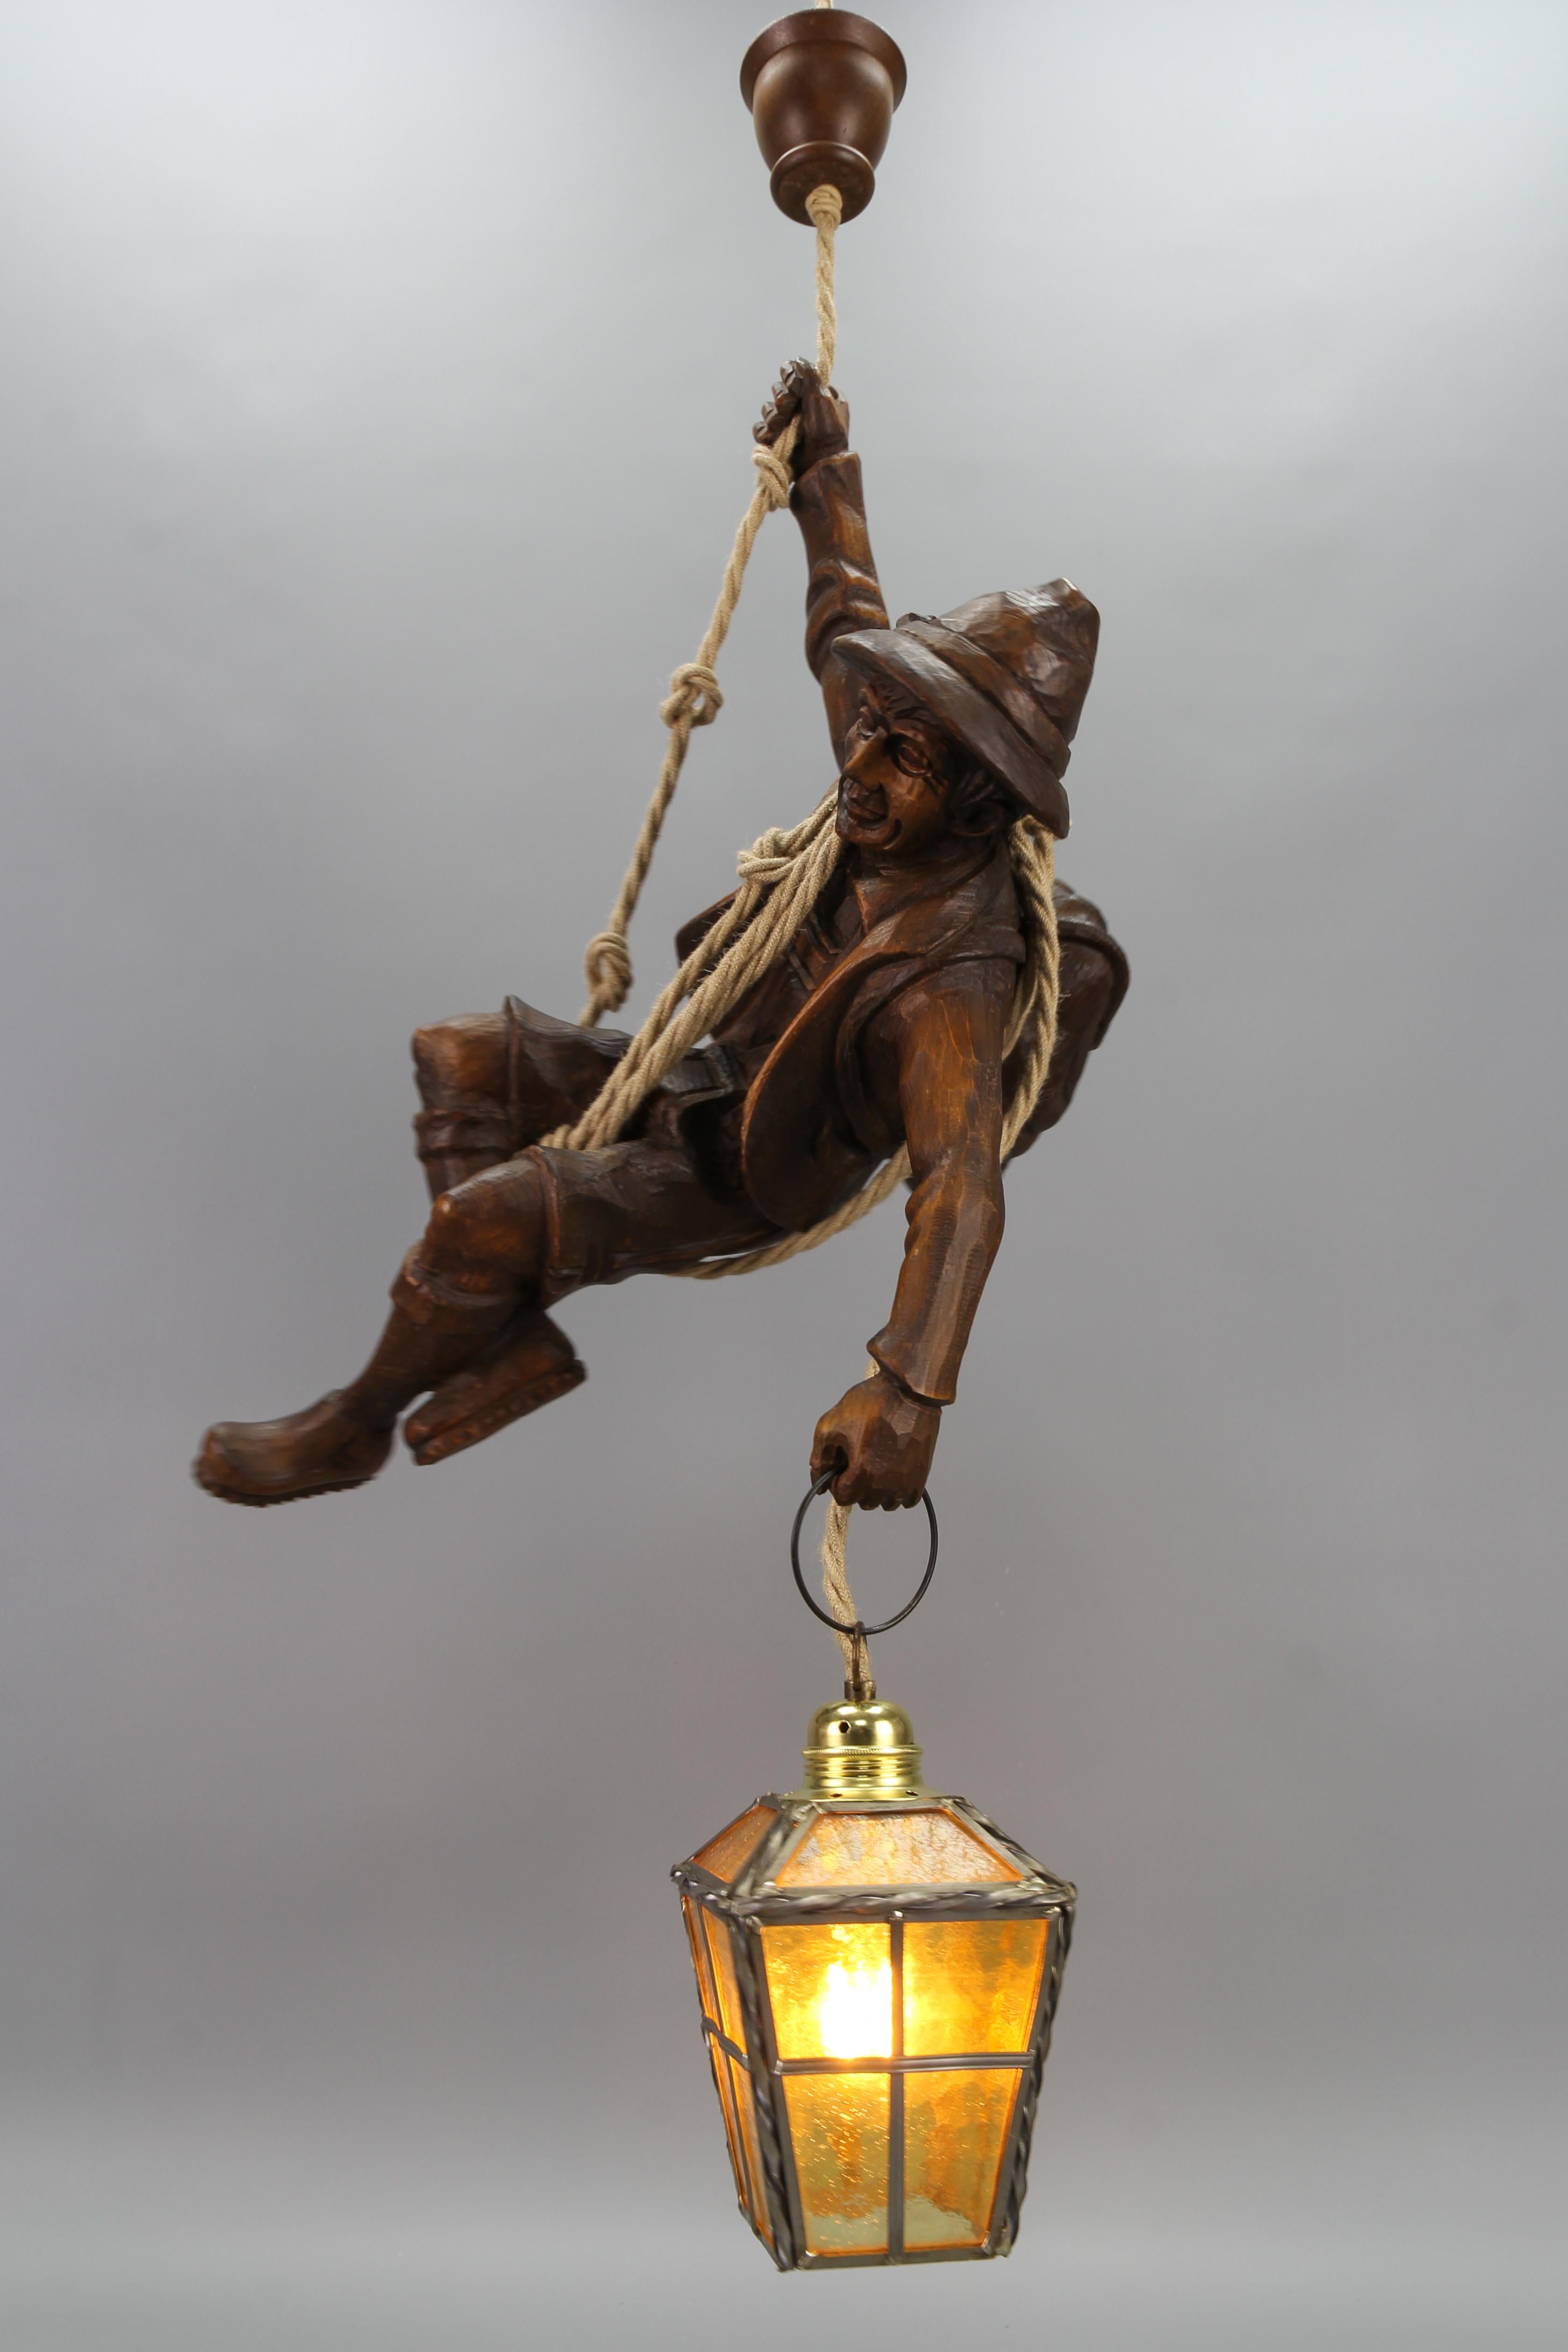 Grand luminaire suspendu avec figure de grimpeur sculptée et lanterne, Allemagne
Cette impressionnante lampe pendante figurative allemande présente une figure en bois de tilleul sculptée à la main d'un bel alpiniste dans des tons de bois brun